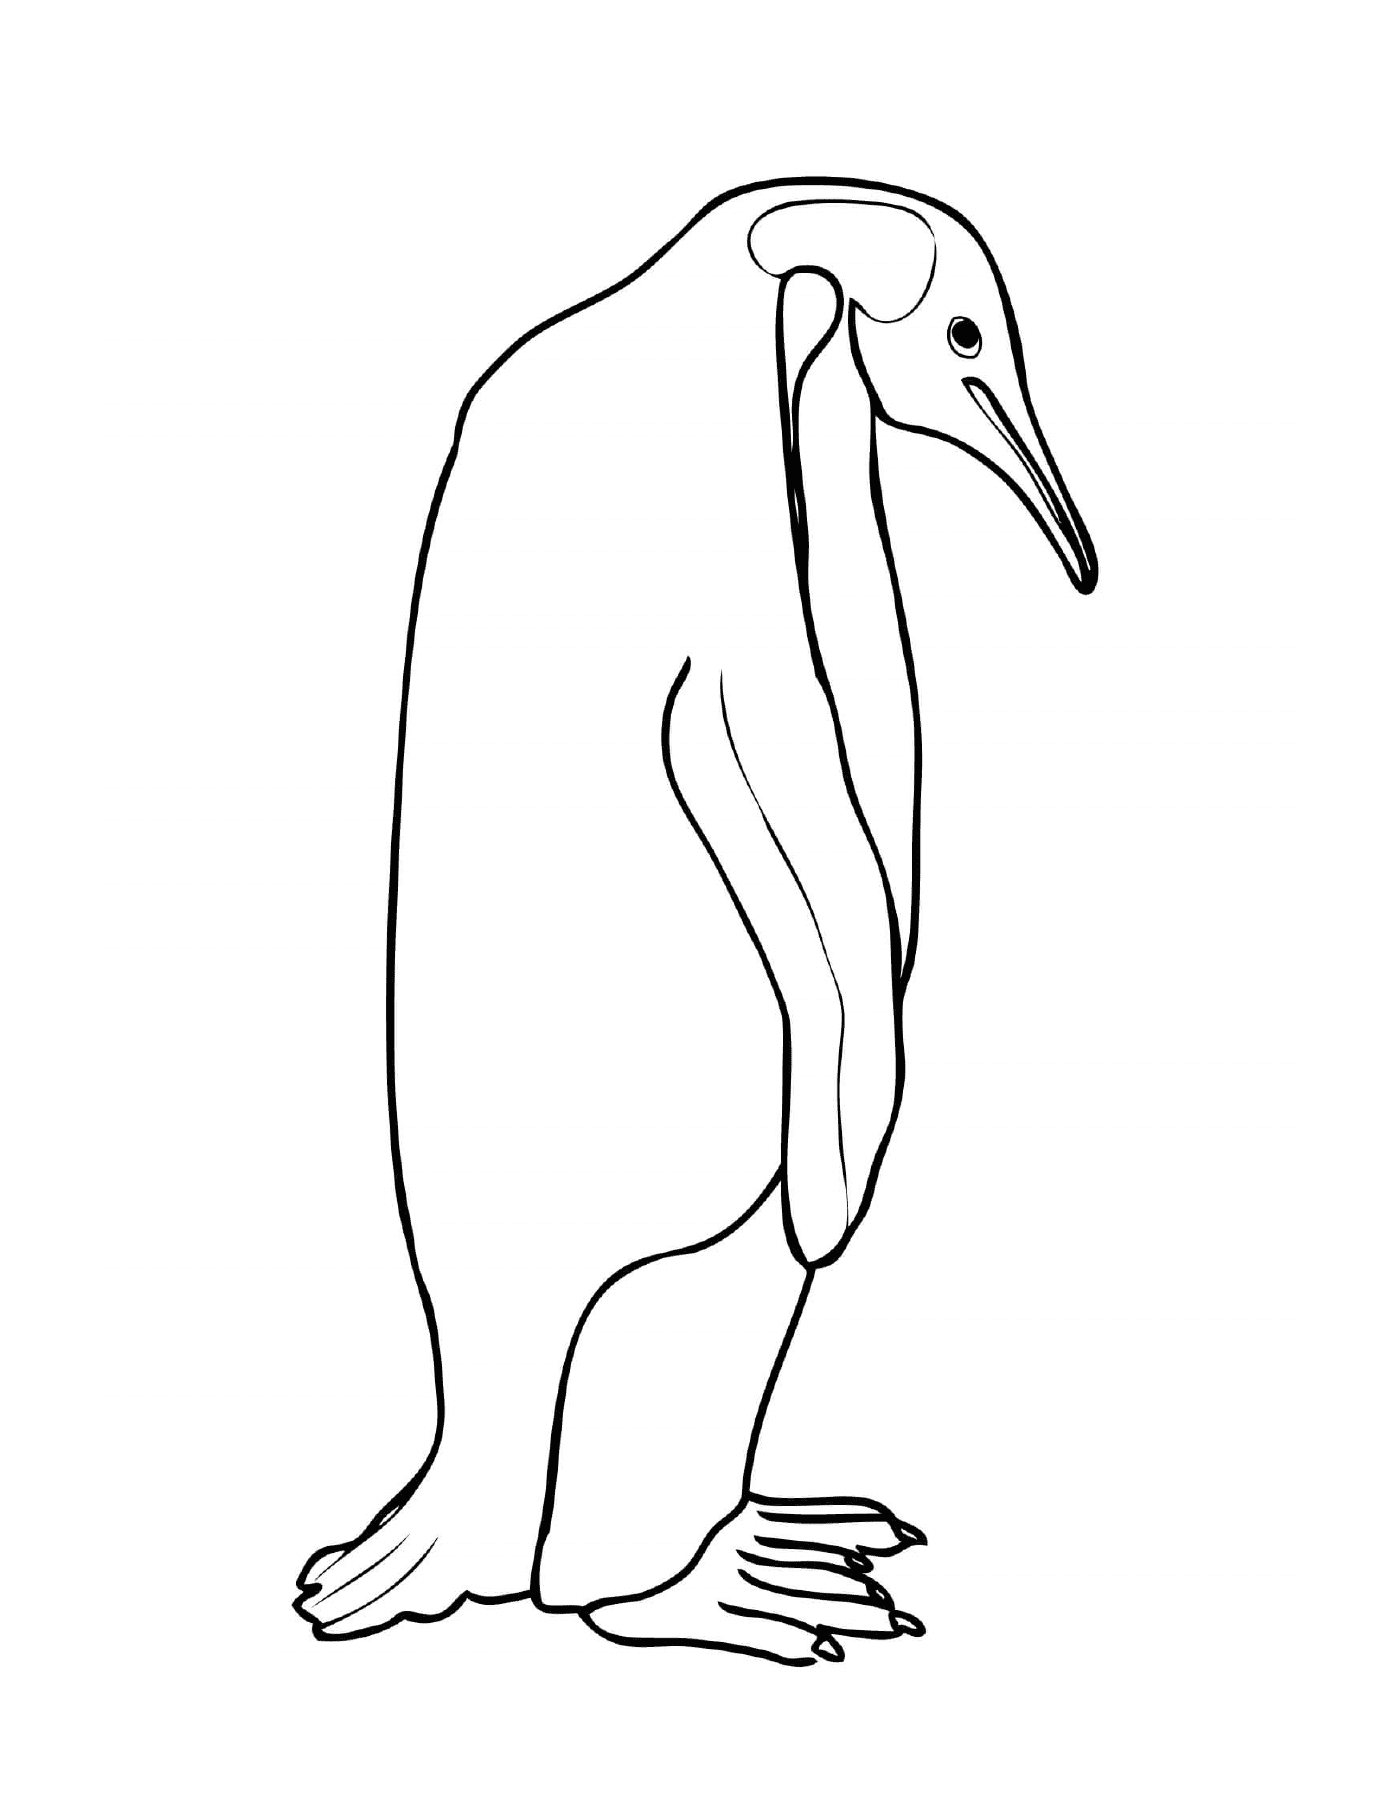  Манчот пингвина с длинным клювом 